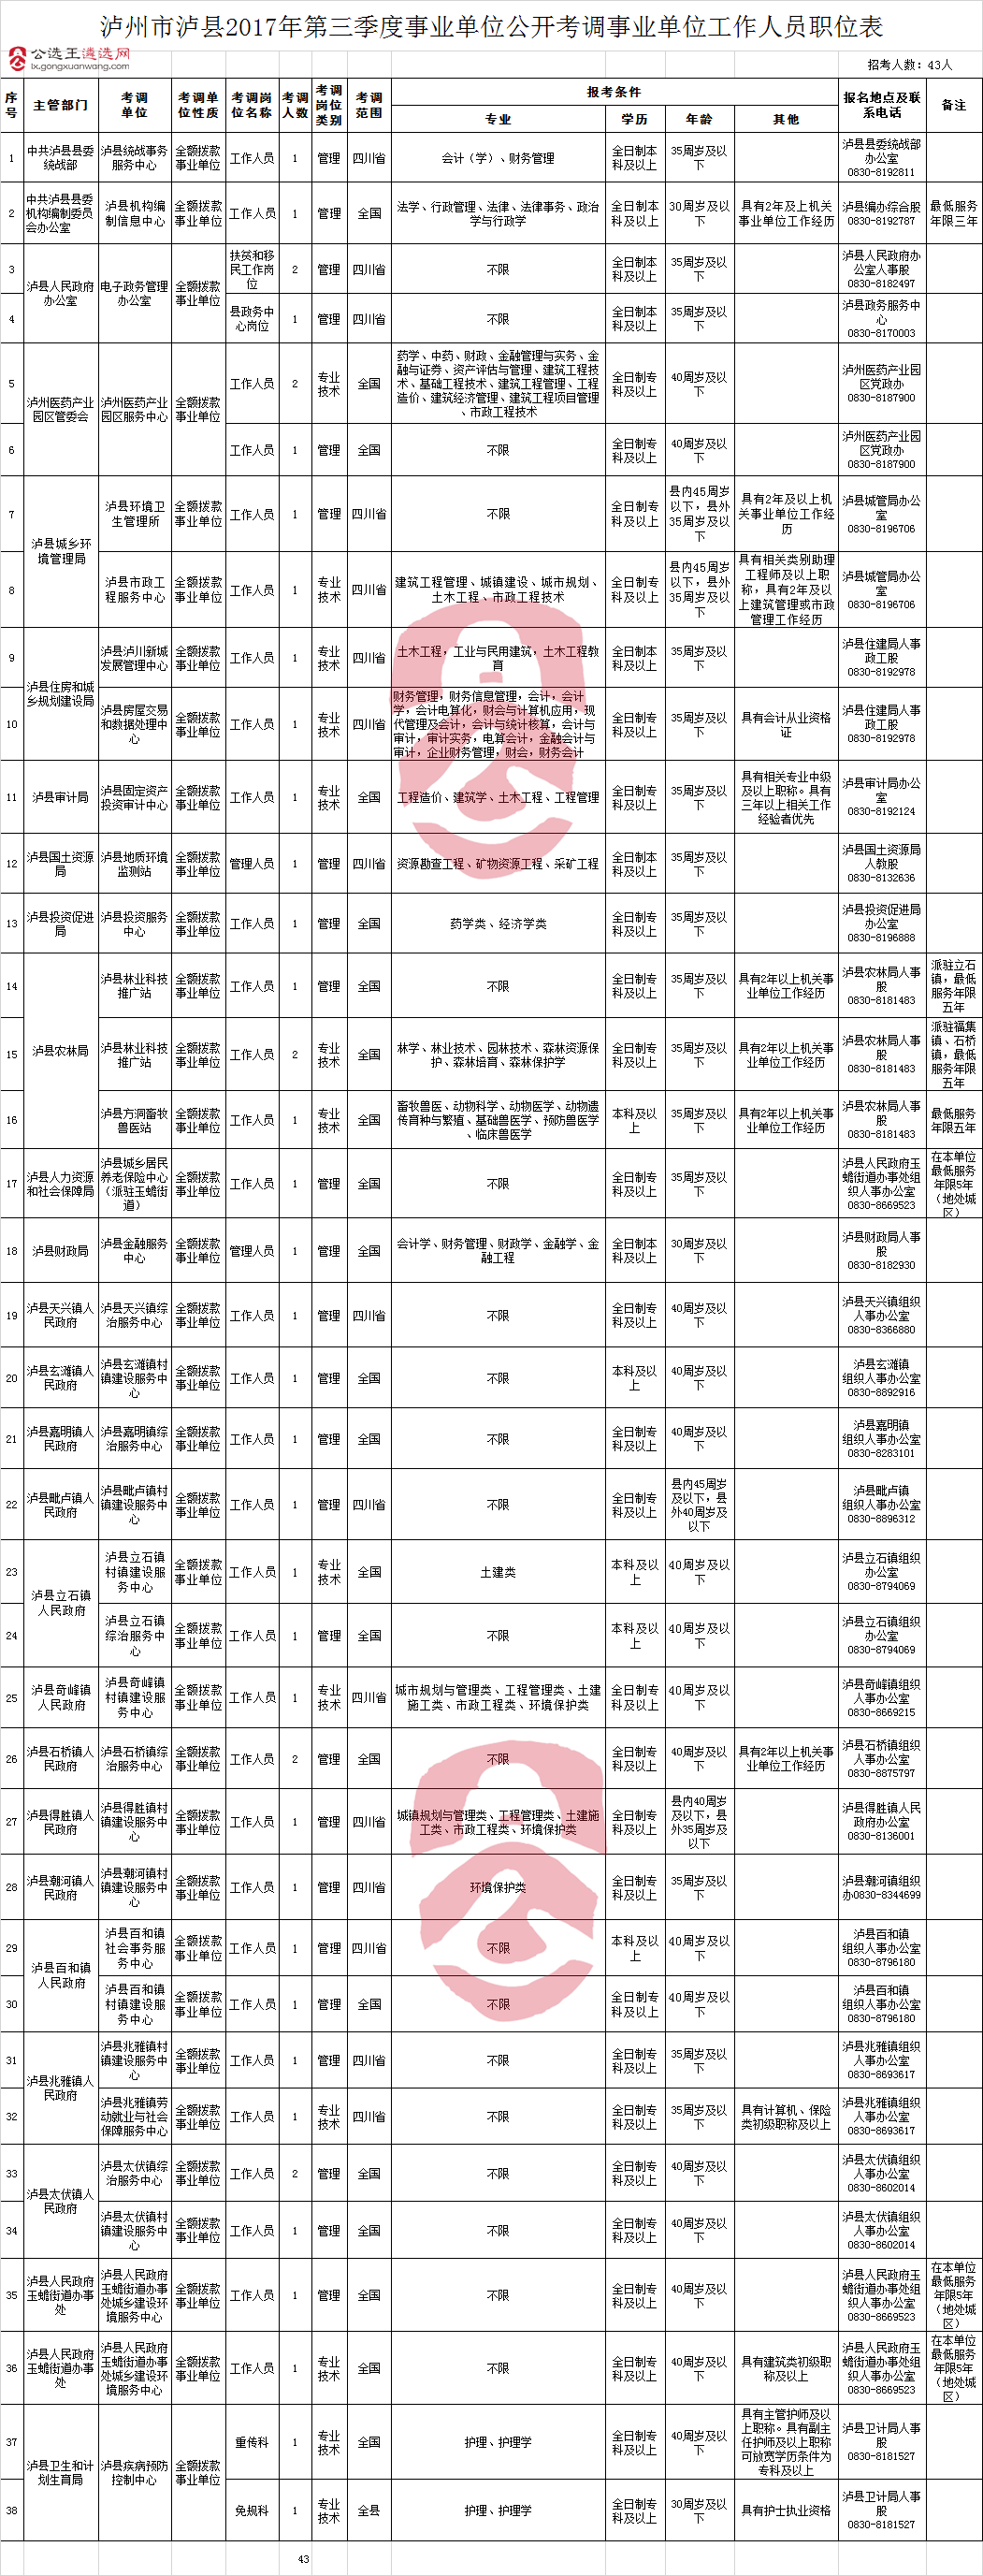 泸州市泸县2017年第三季度事业单位公开考调事业单位工作人员职位表.png